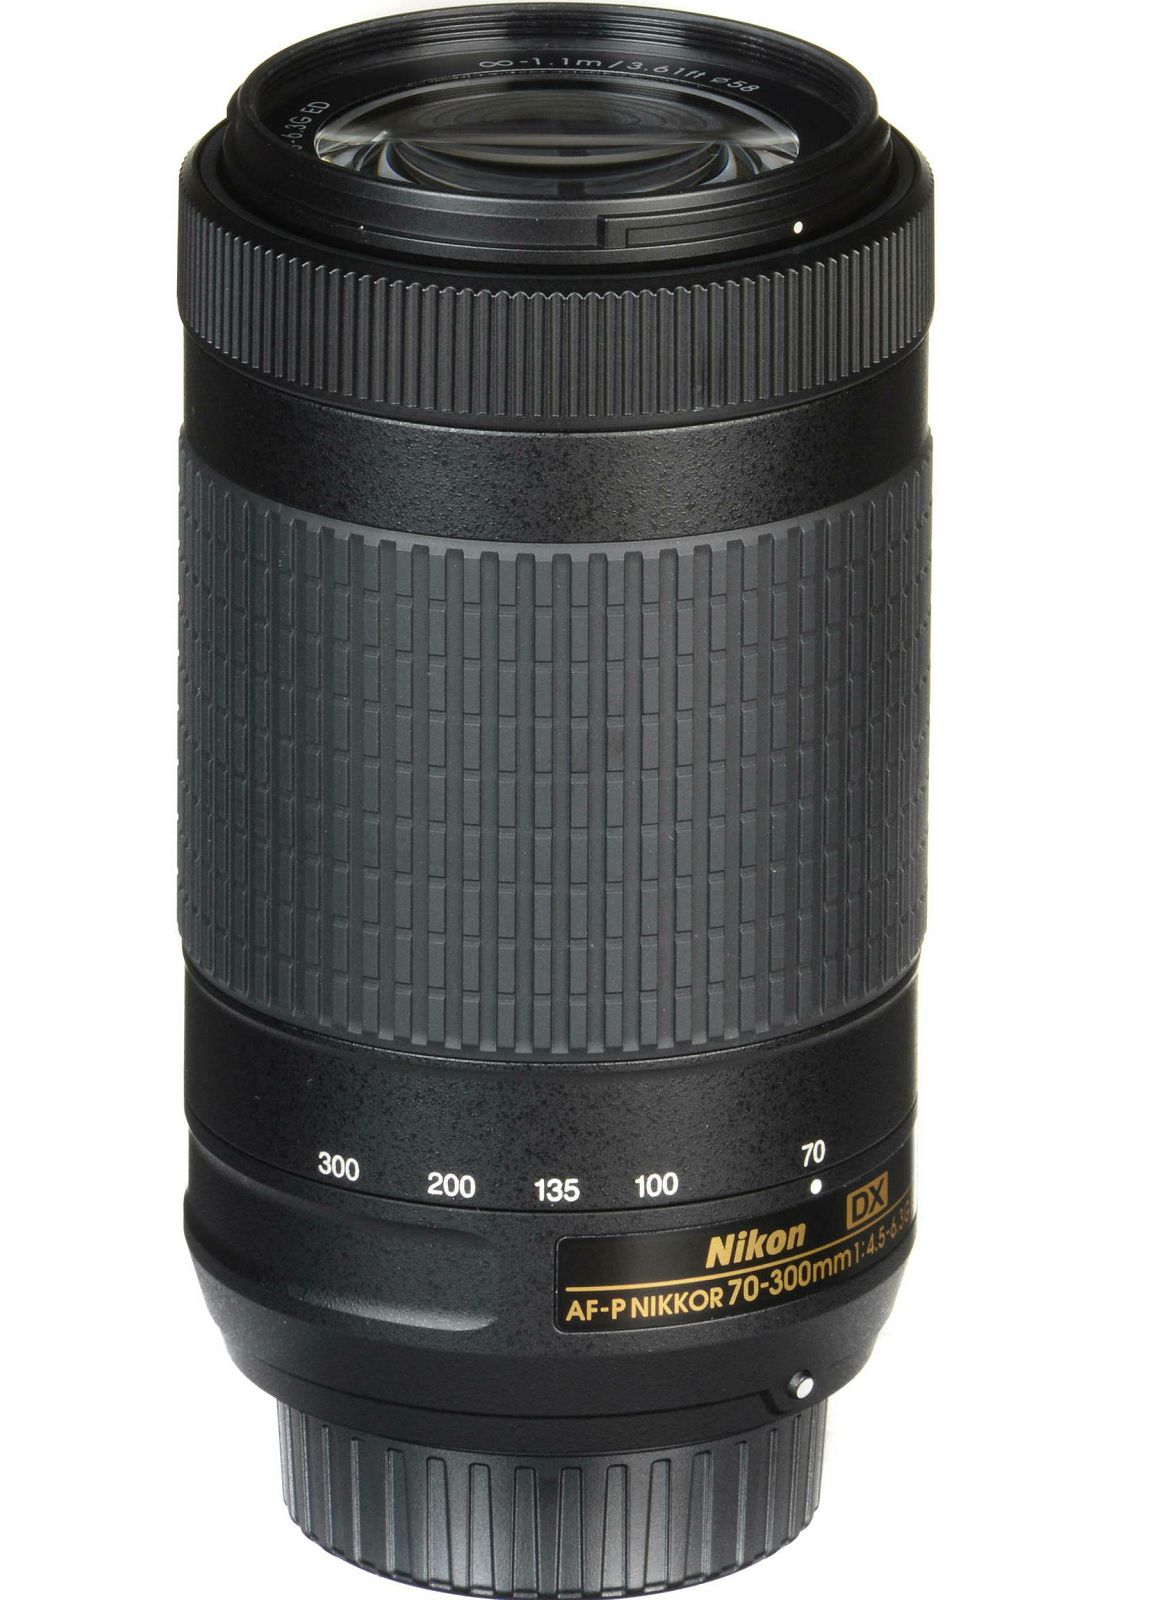 Nikon AF-P 70-300mm f/4.5-6.3G ED DX telefoto objektiv Nikkor 70-300 4.5-6.3 G (JAA828DA)